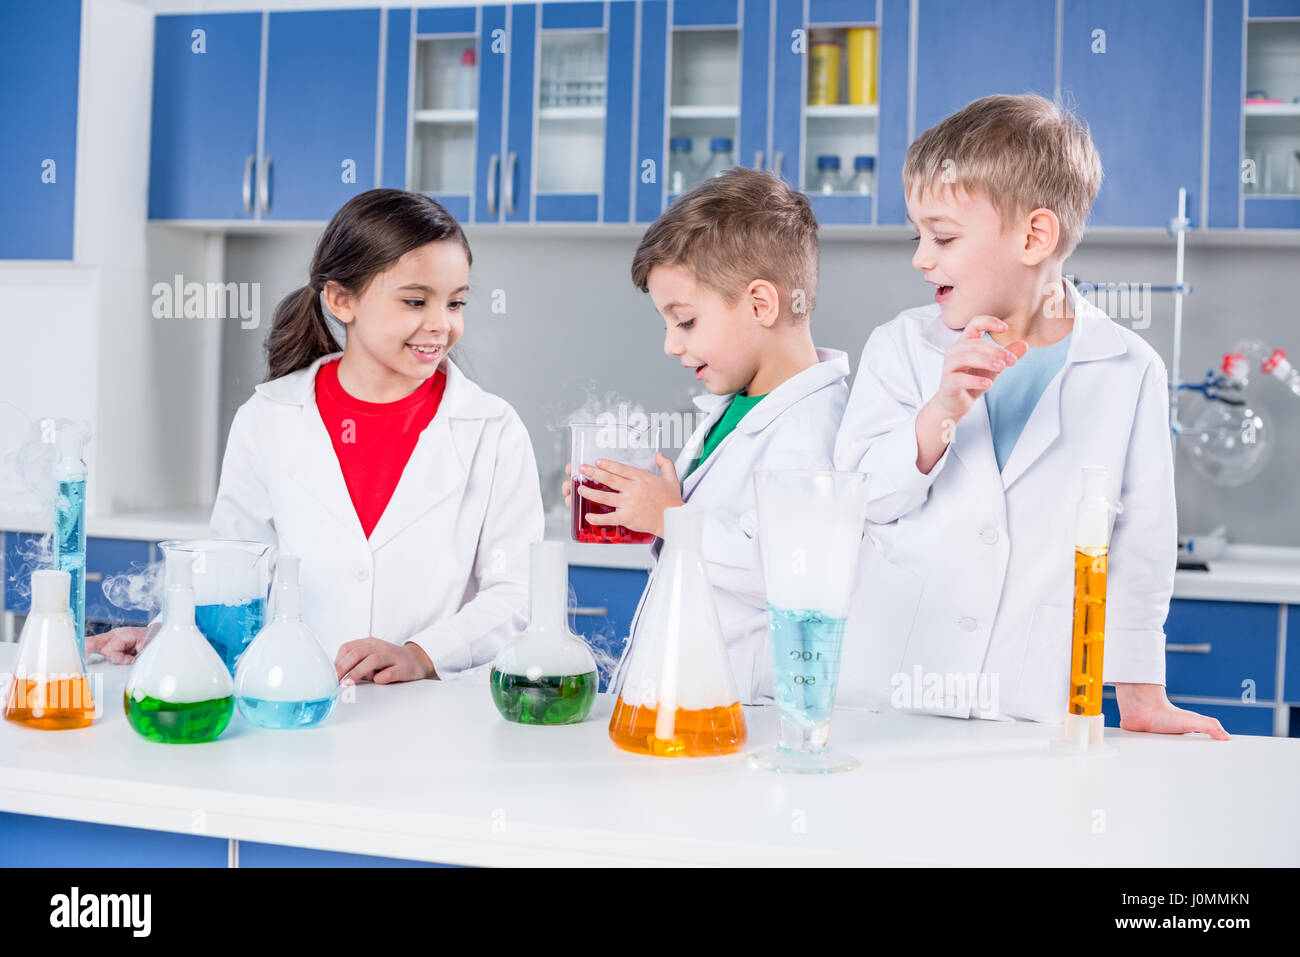 Drei Kinder in weißen Kitteln machen chemischen experimentieren im Labor Stockfoto